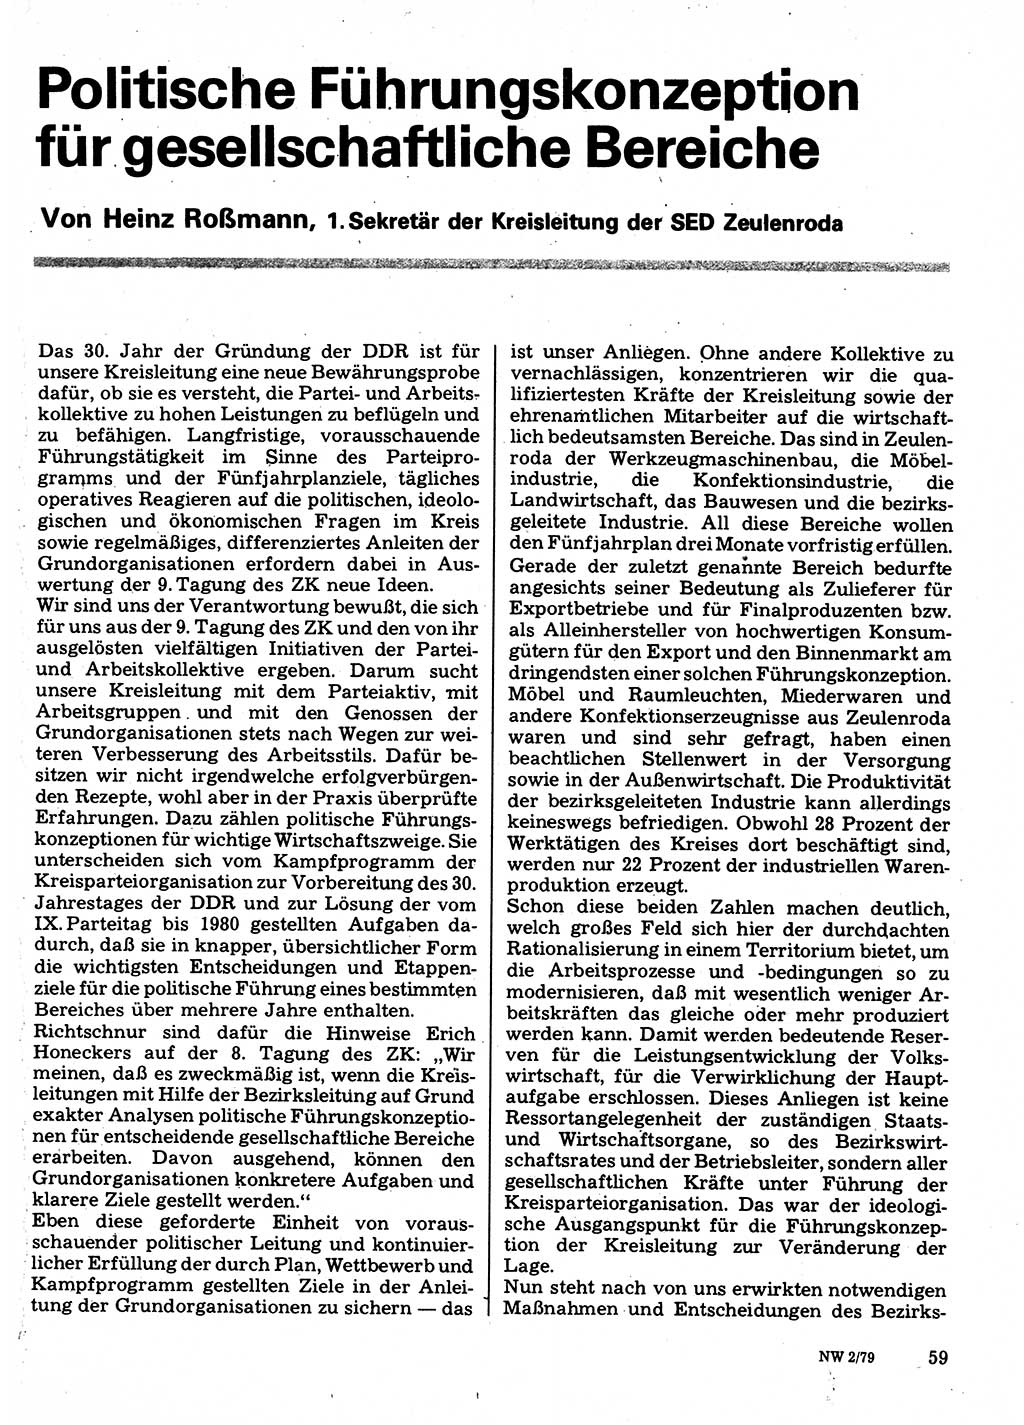 Neuer Weg (NW), Organ des Zentralkomitees (ZK) der SED (Sozialistische Einheitspartei Deutschlands) für Fragen des Parteilebens, 34. Jahrgang [Deutsche Demokratische Republik (DDR)] 1979, Seite 59 (NW ZK SED DDR 1979, S. 59)